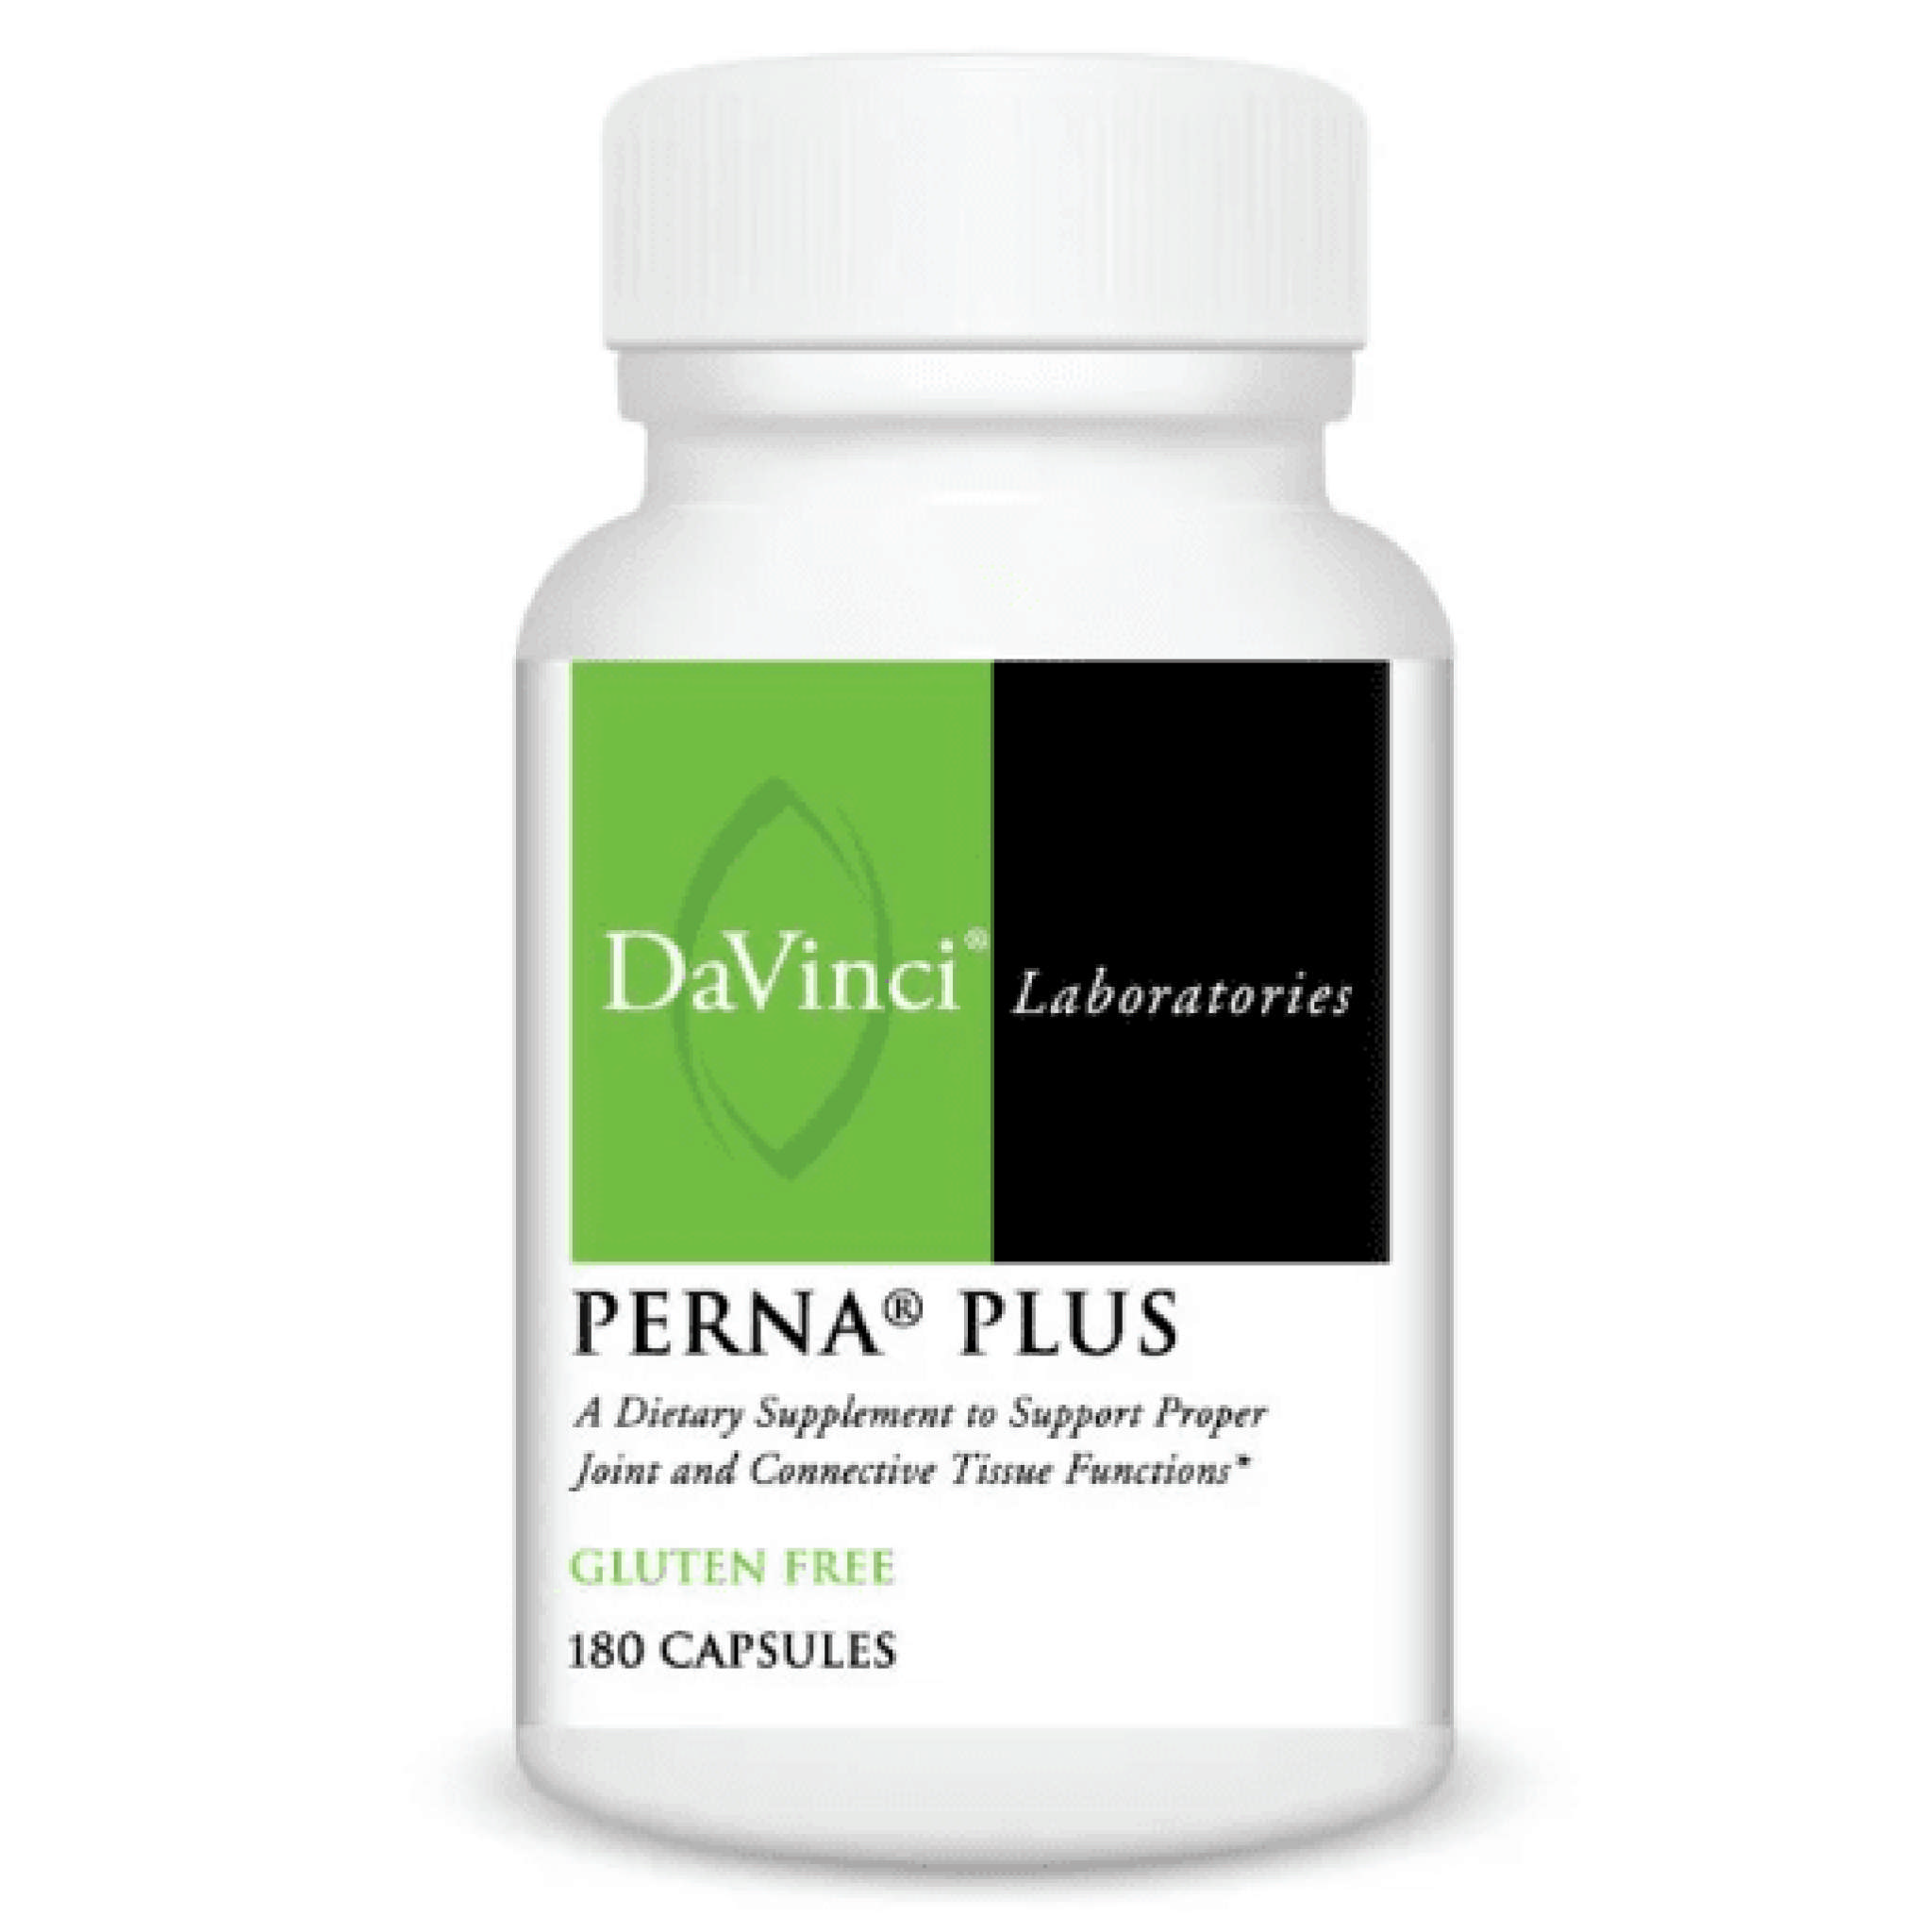 Davinci Laboratories - Perna Plus